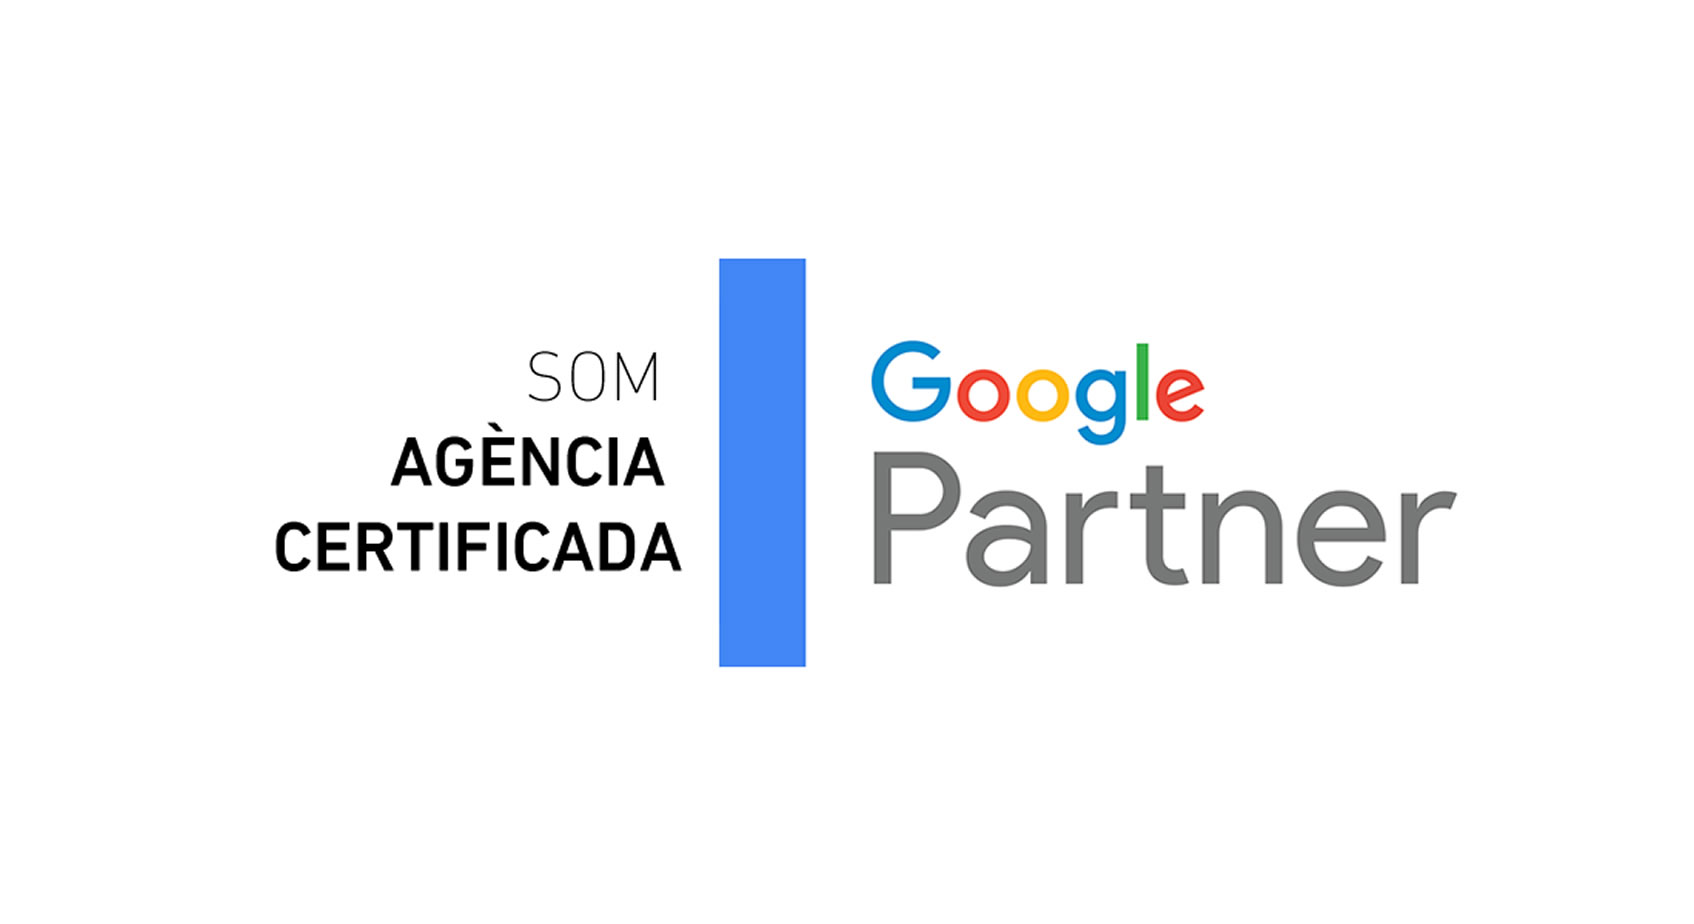 agencia google partner instint estrategia digital igualada